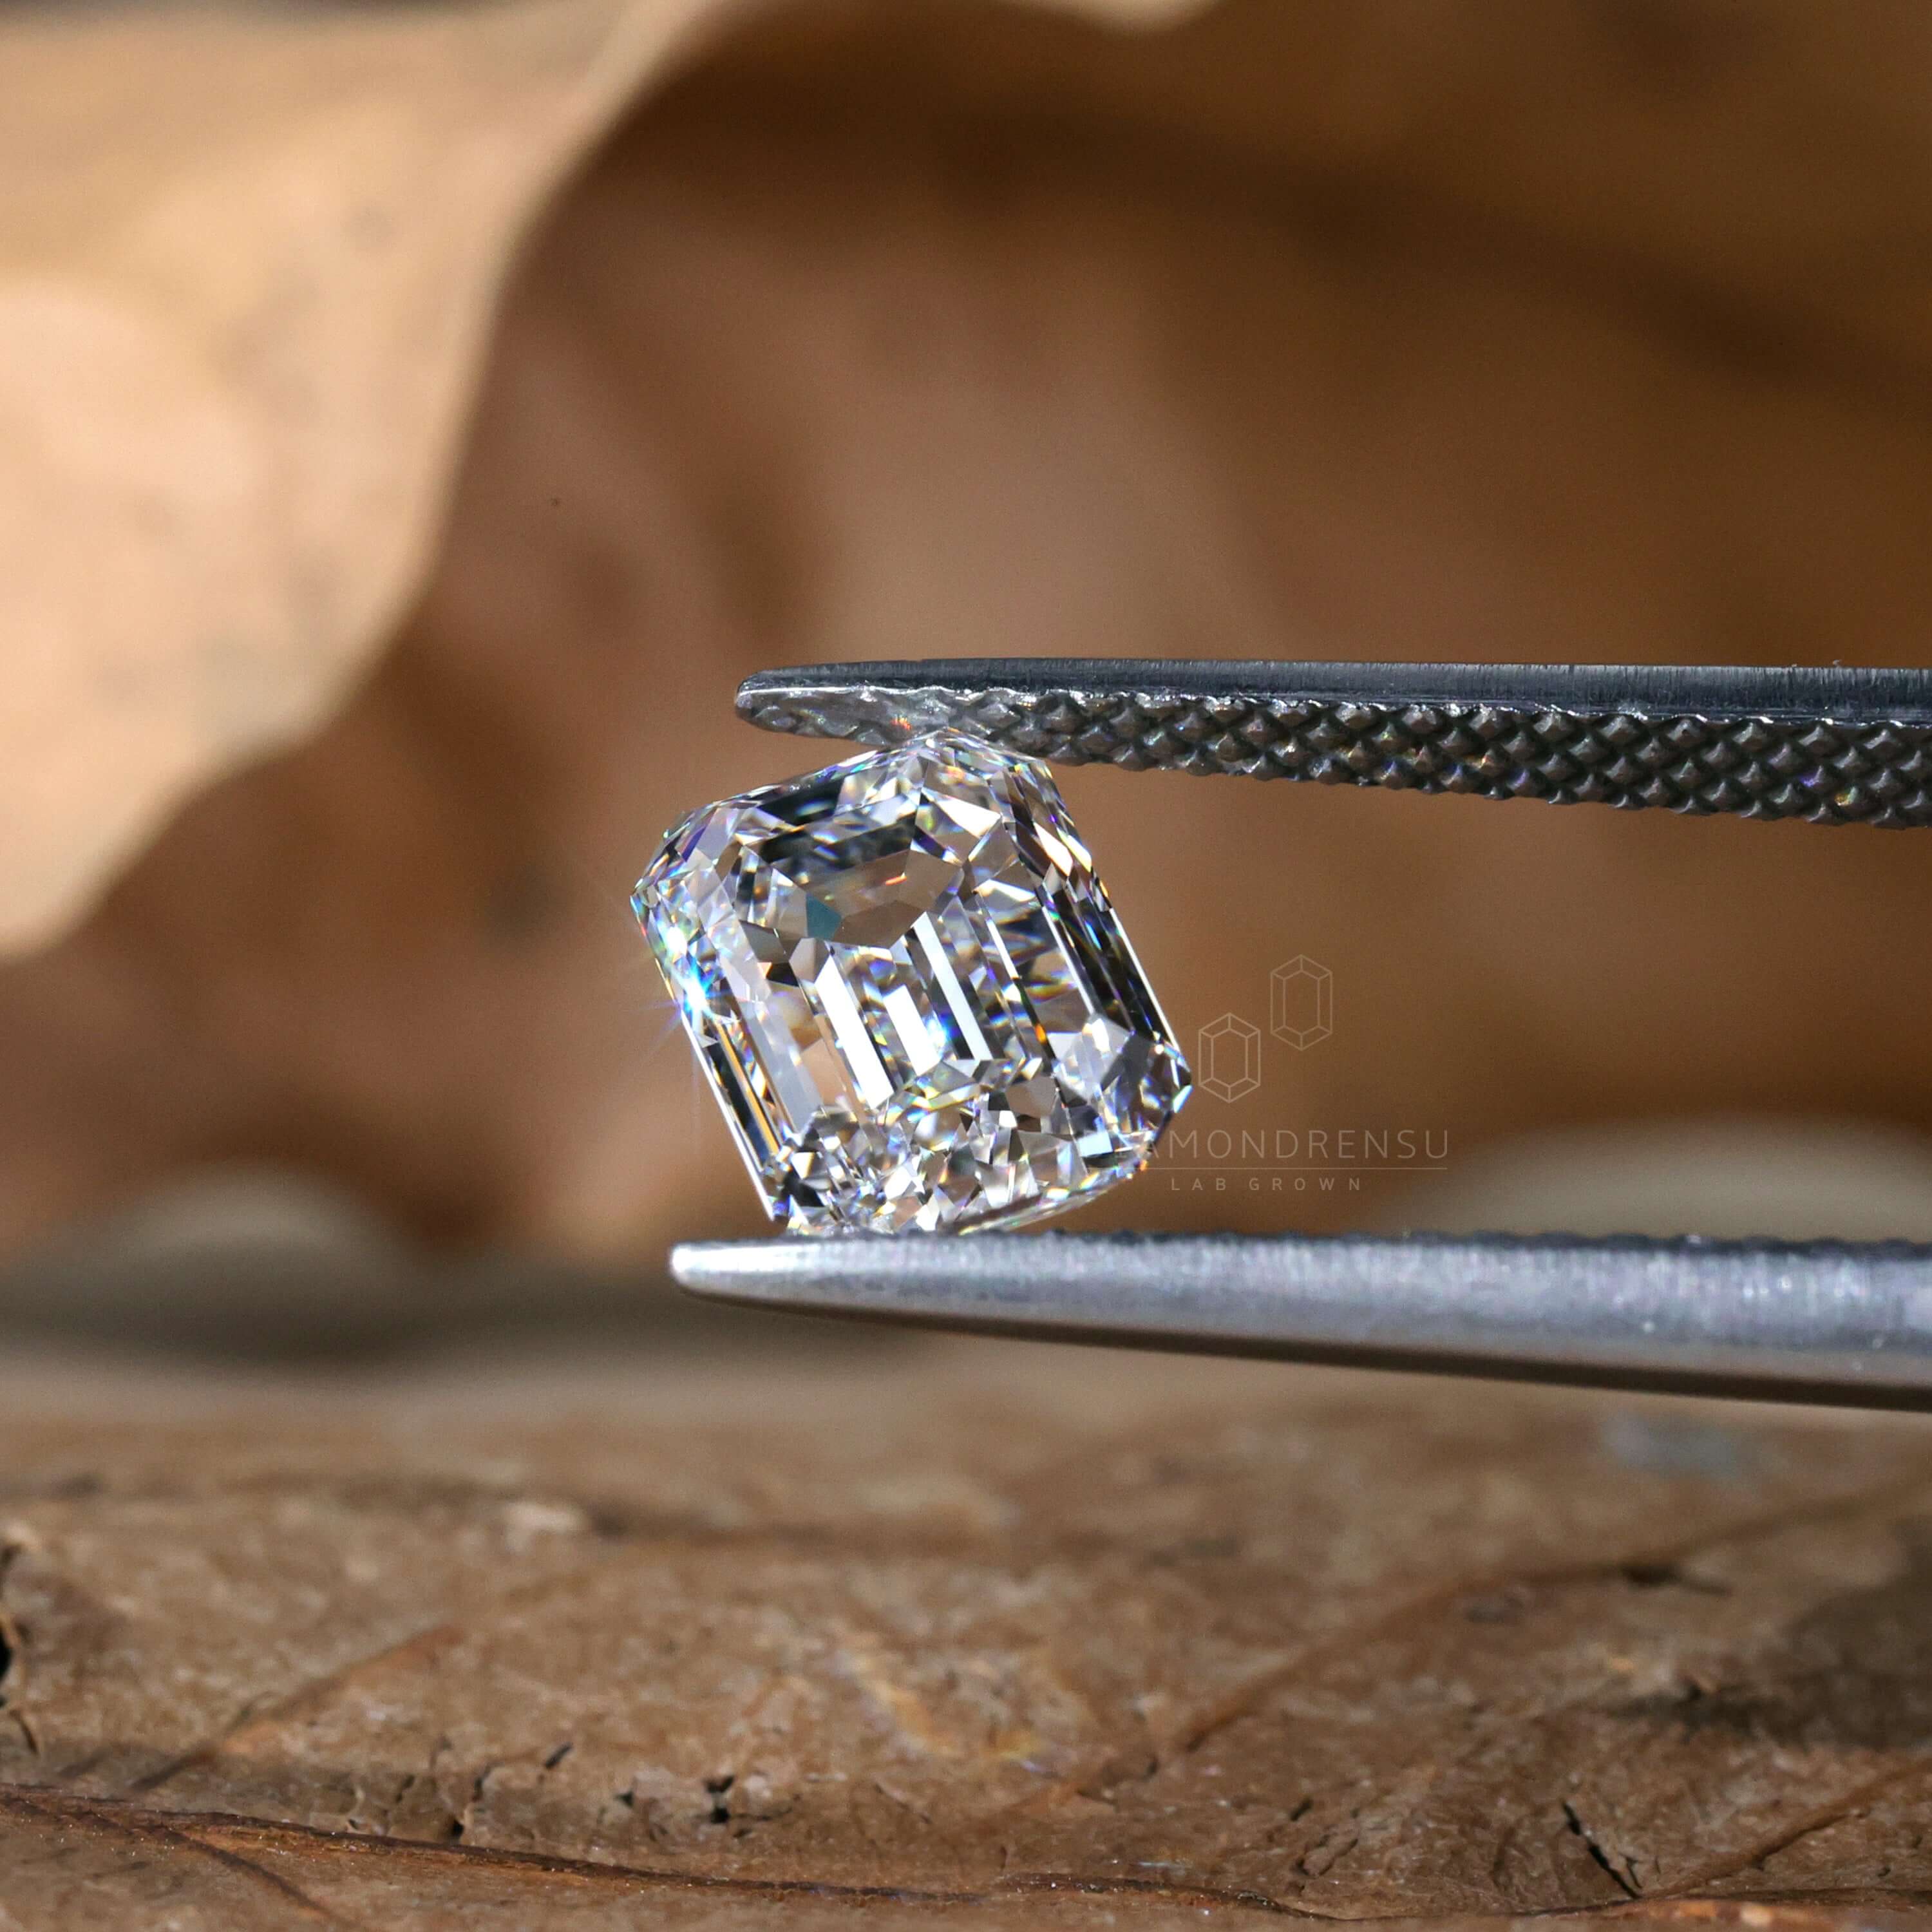 igi certified diamond - diamondrensu